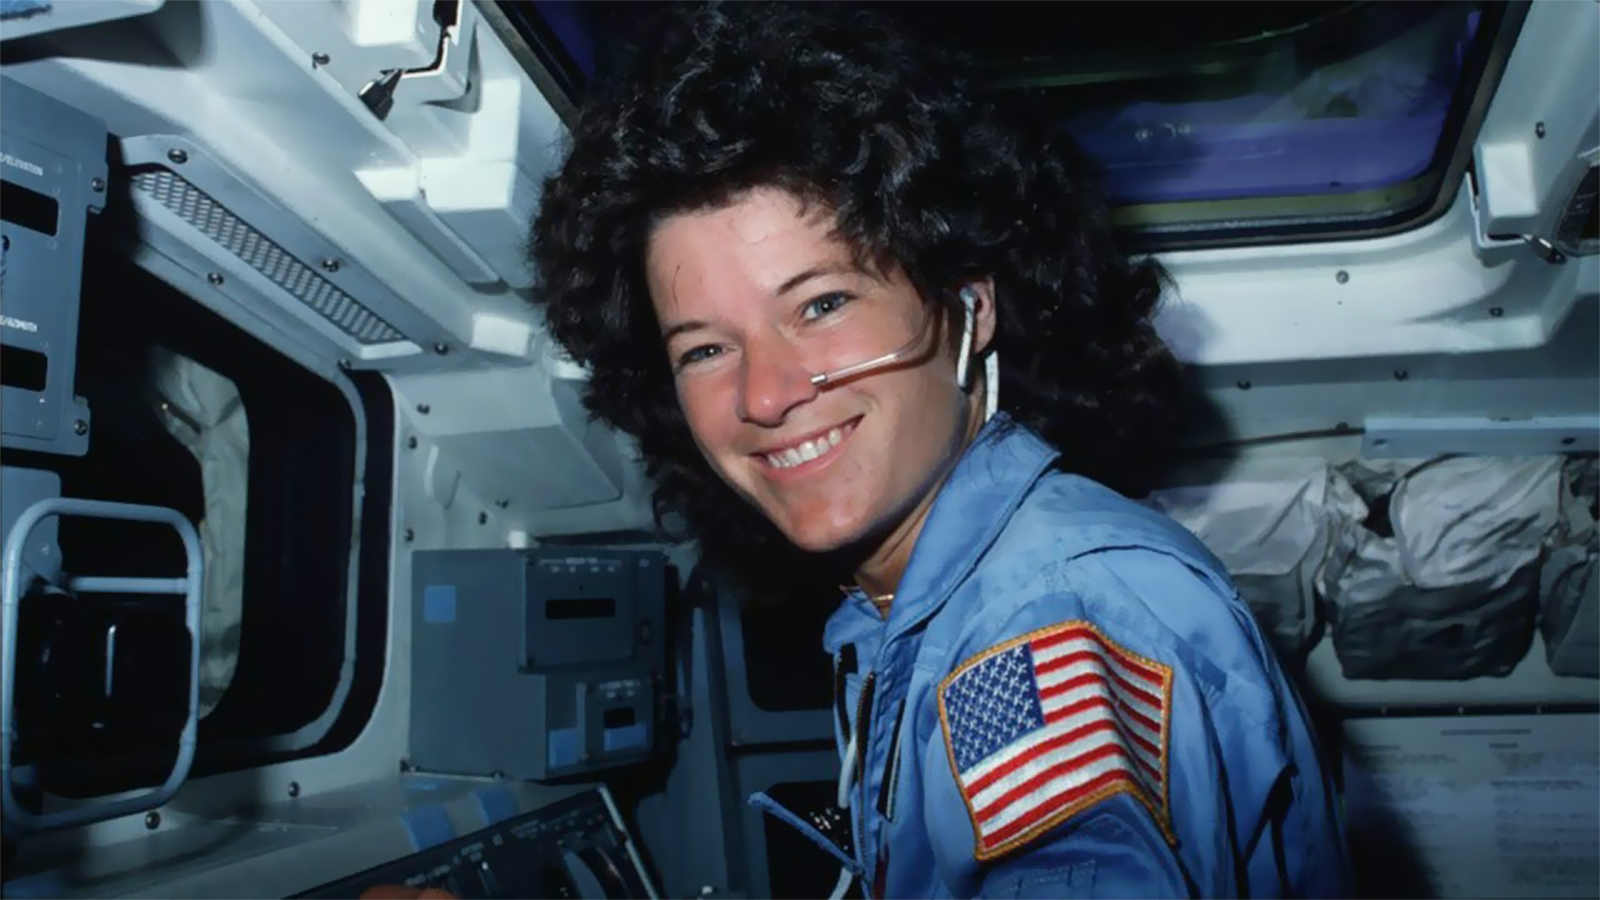 سالي رايد أول امرأة تعمل في مجال الفضاء (مواقع التواصل)